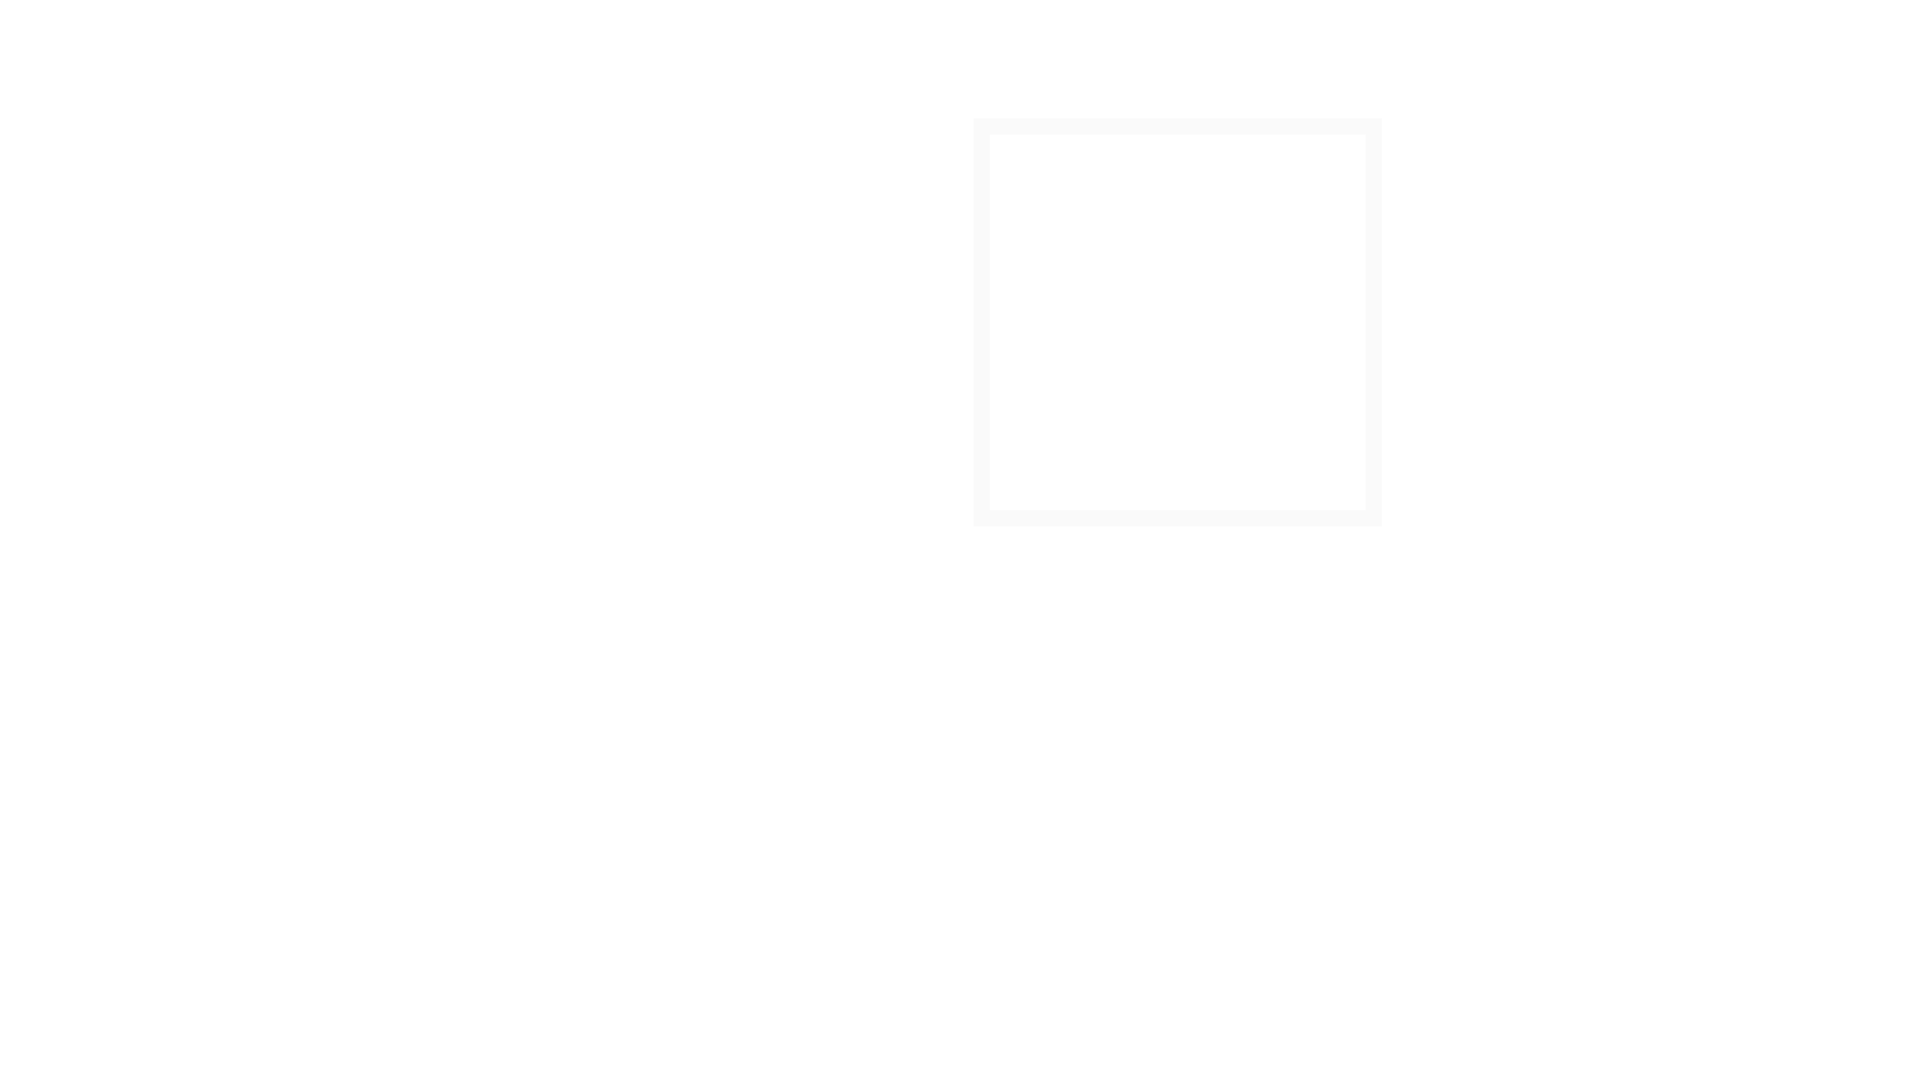 NCXR